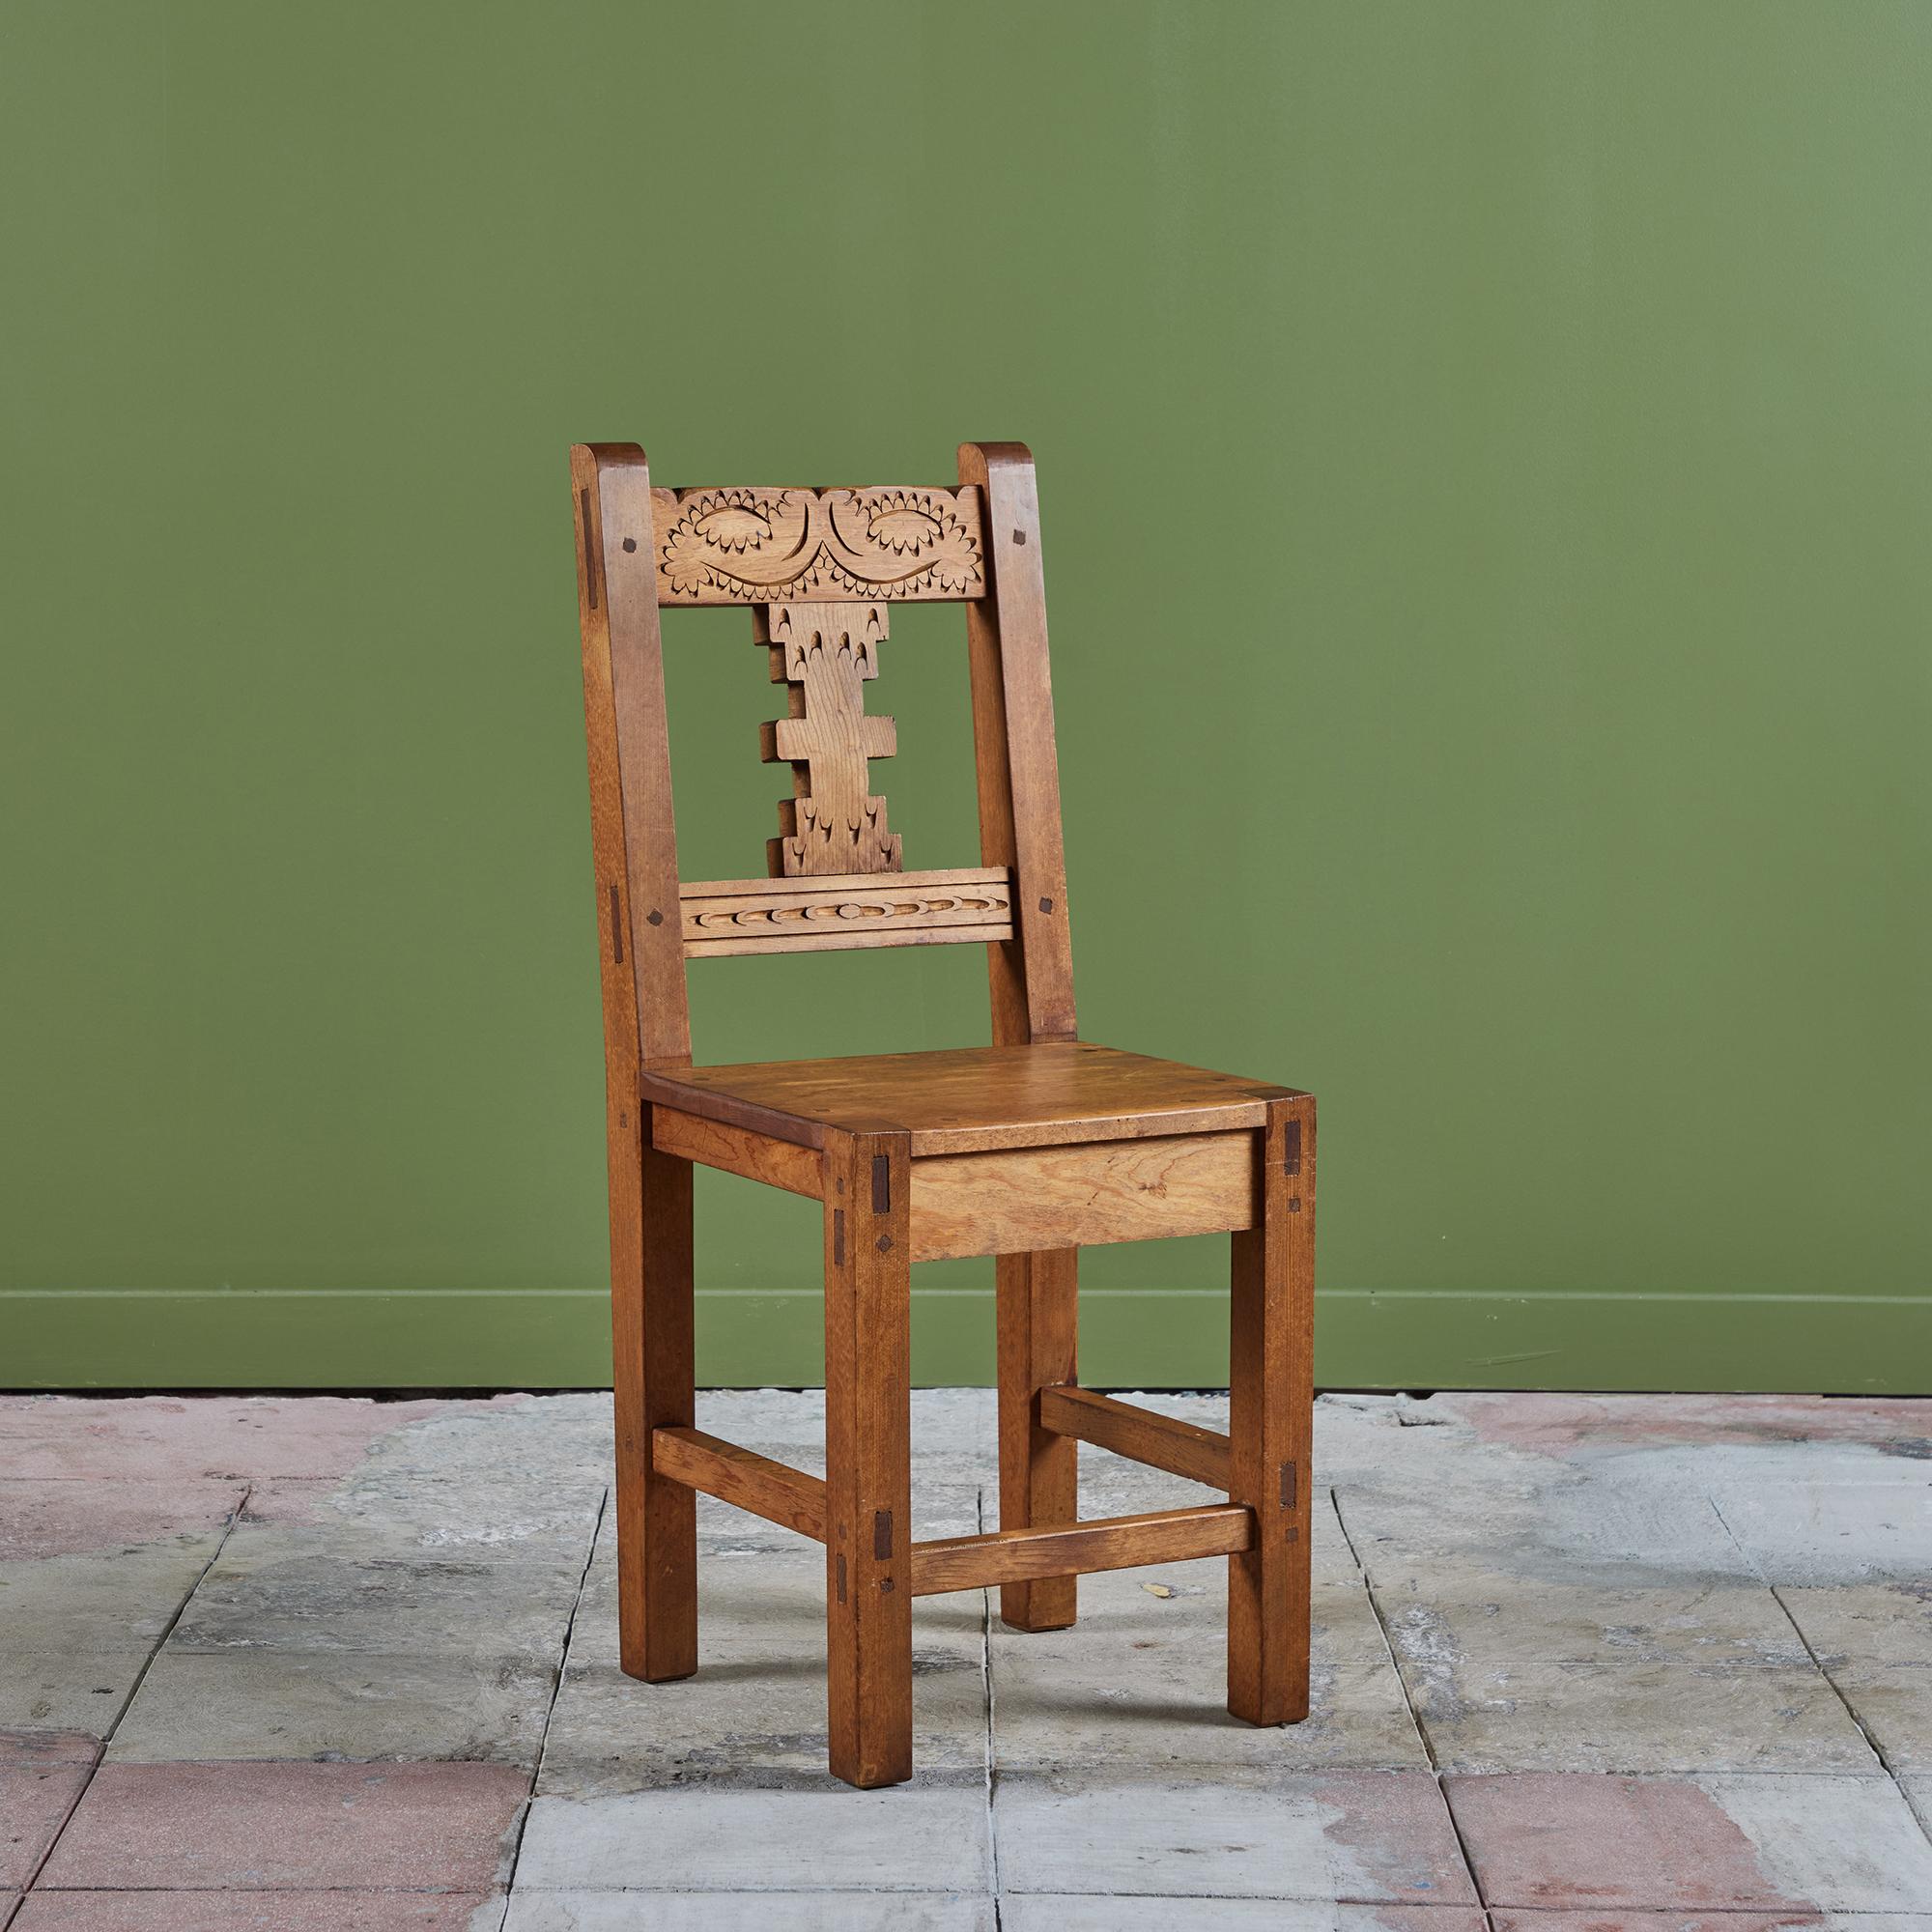 Handgeschnitzter moderner mexikanischer Beistellstuhl. Der Stuhl hat ein Gestell aus Mahagoni mit einer geschnitzten Verzierung entlang der Vorderseite der Rückenlehne. Perfekt als Akzentstuhl, Schreibtischstuhl oder als Esszimmerstuhl! Wir haben